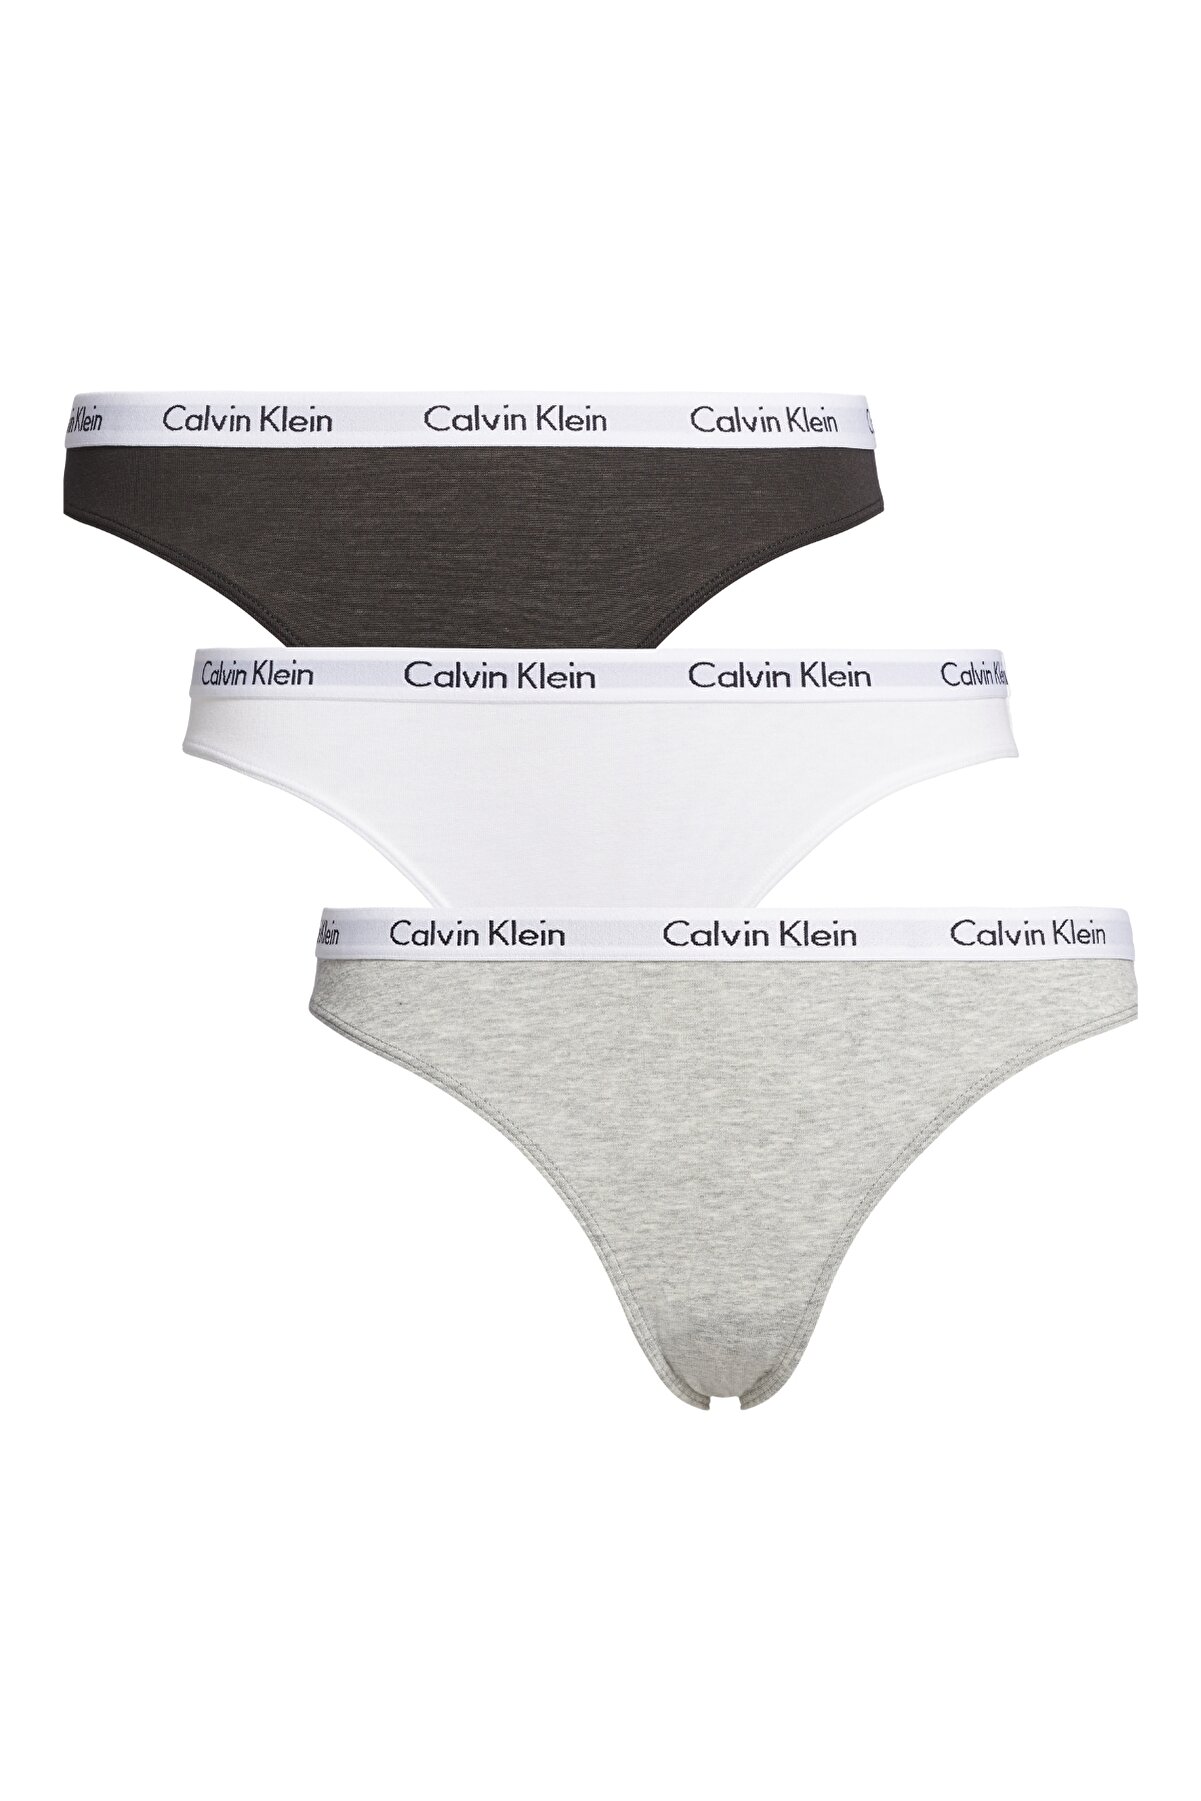 Calvin Klein Kadın Imzalı Elastik Bantlı Beyaz-gri-siyah Külot 000qd3588e999-gri